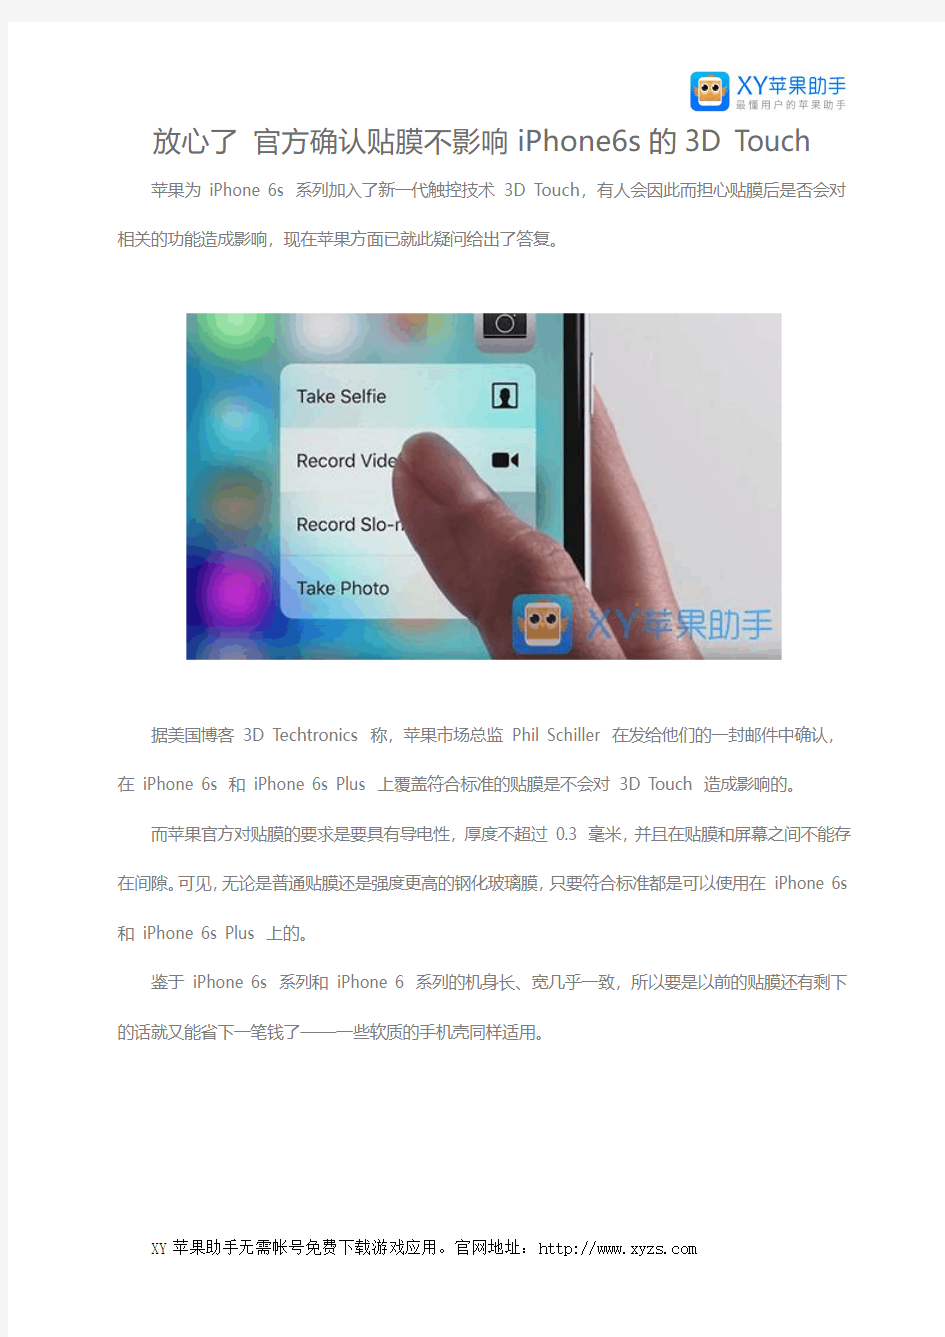 放心了 官方确认贴膜不影响iPhone6s的3D Touch